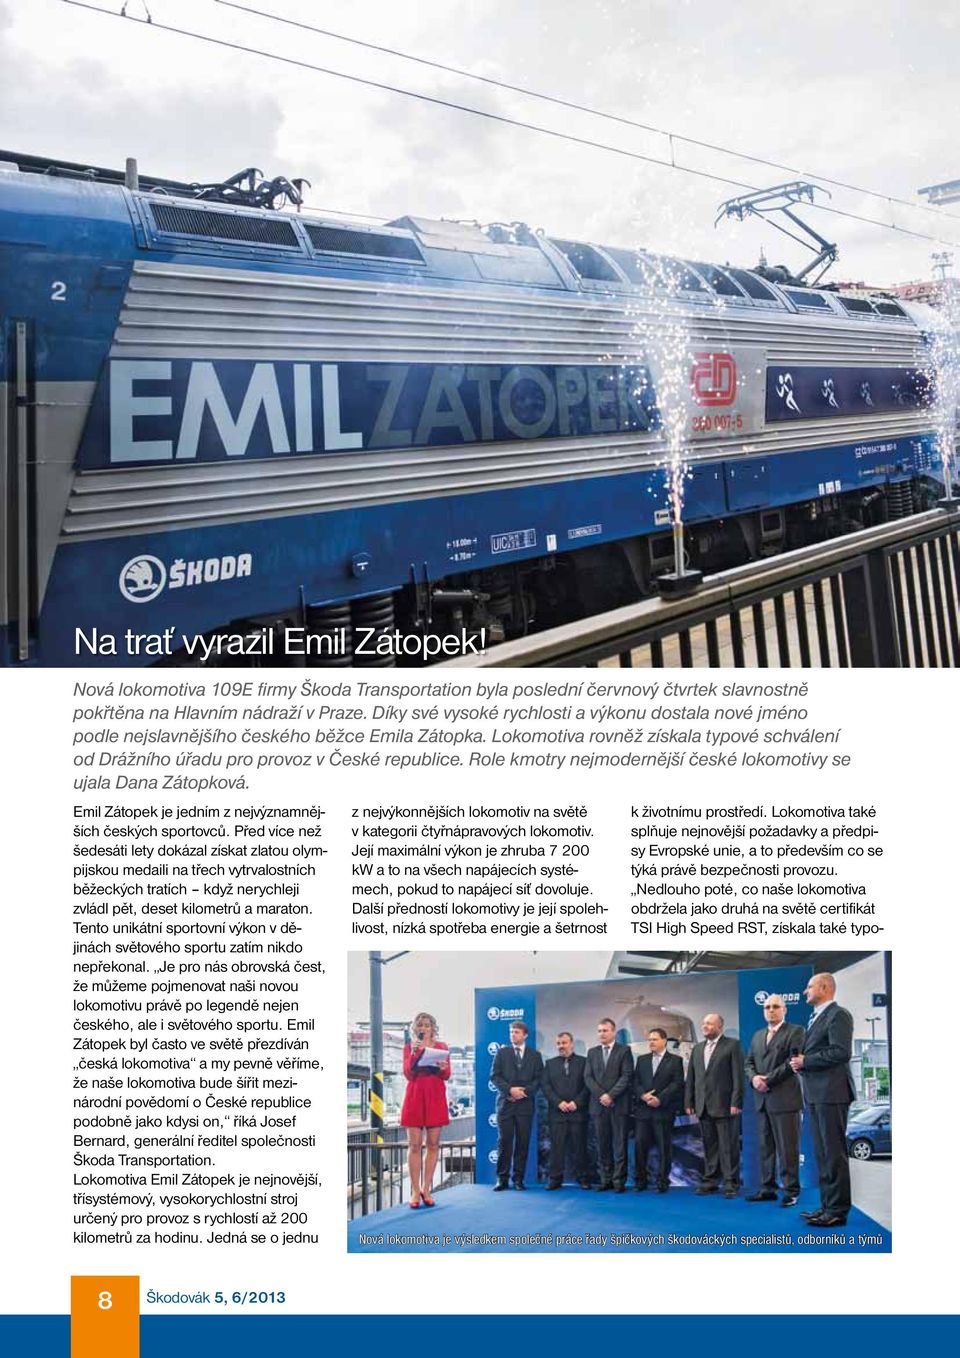 Role kmotry nejmodernější české lokomotivy se ujala Dana Zátopková. Emil Zátopek je jedním z nejvýznamnějších českých sportovců.